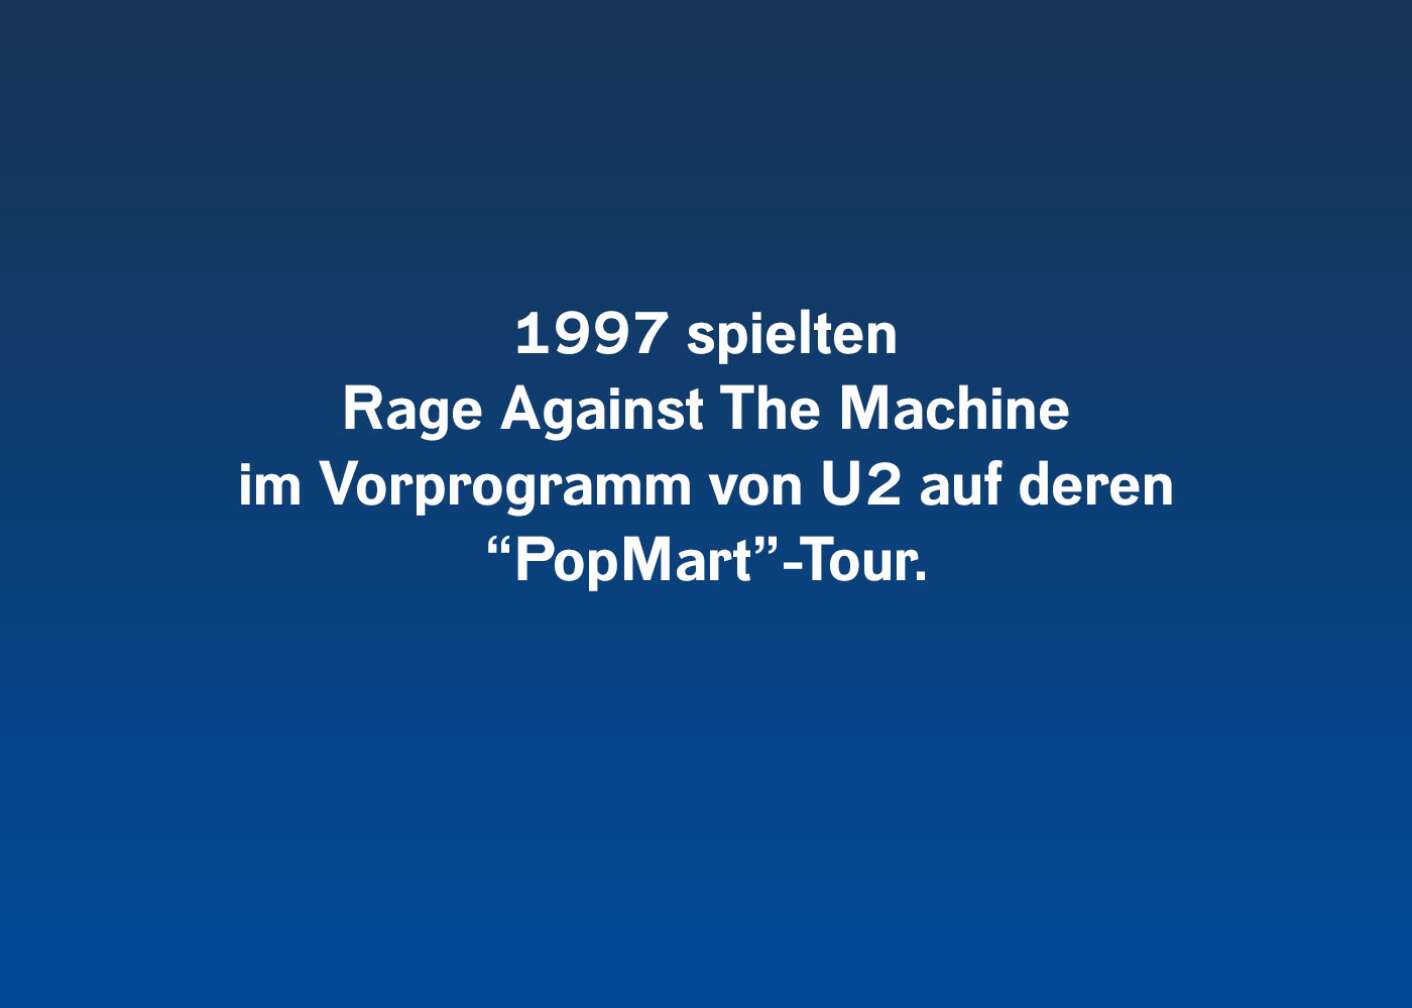 6 Fakten über Rage Against The Machine (1997 spielten)